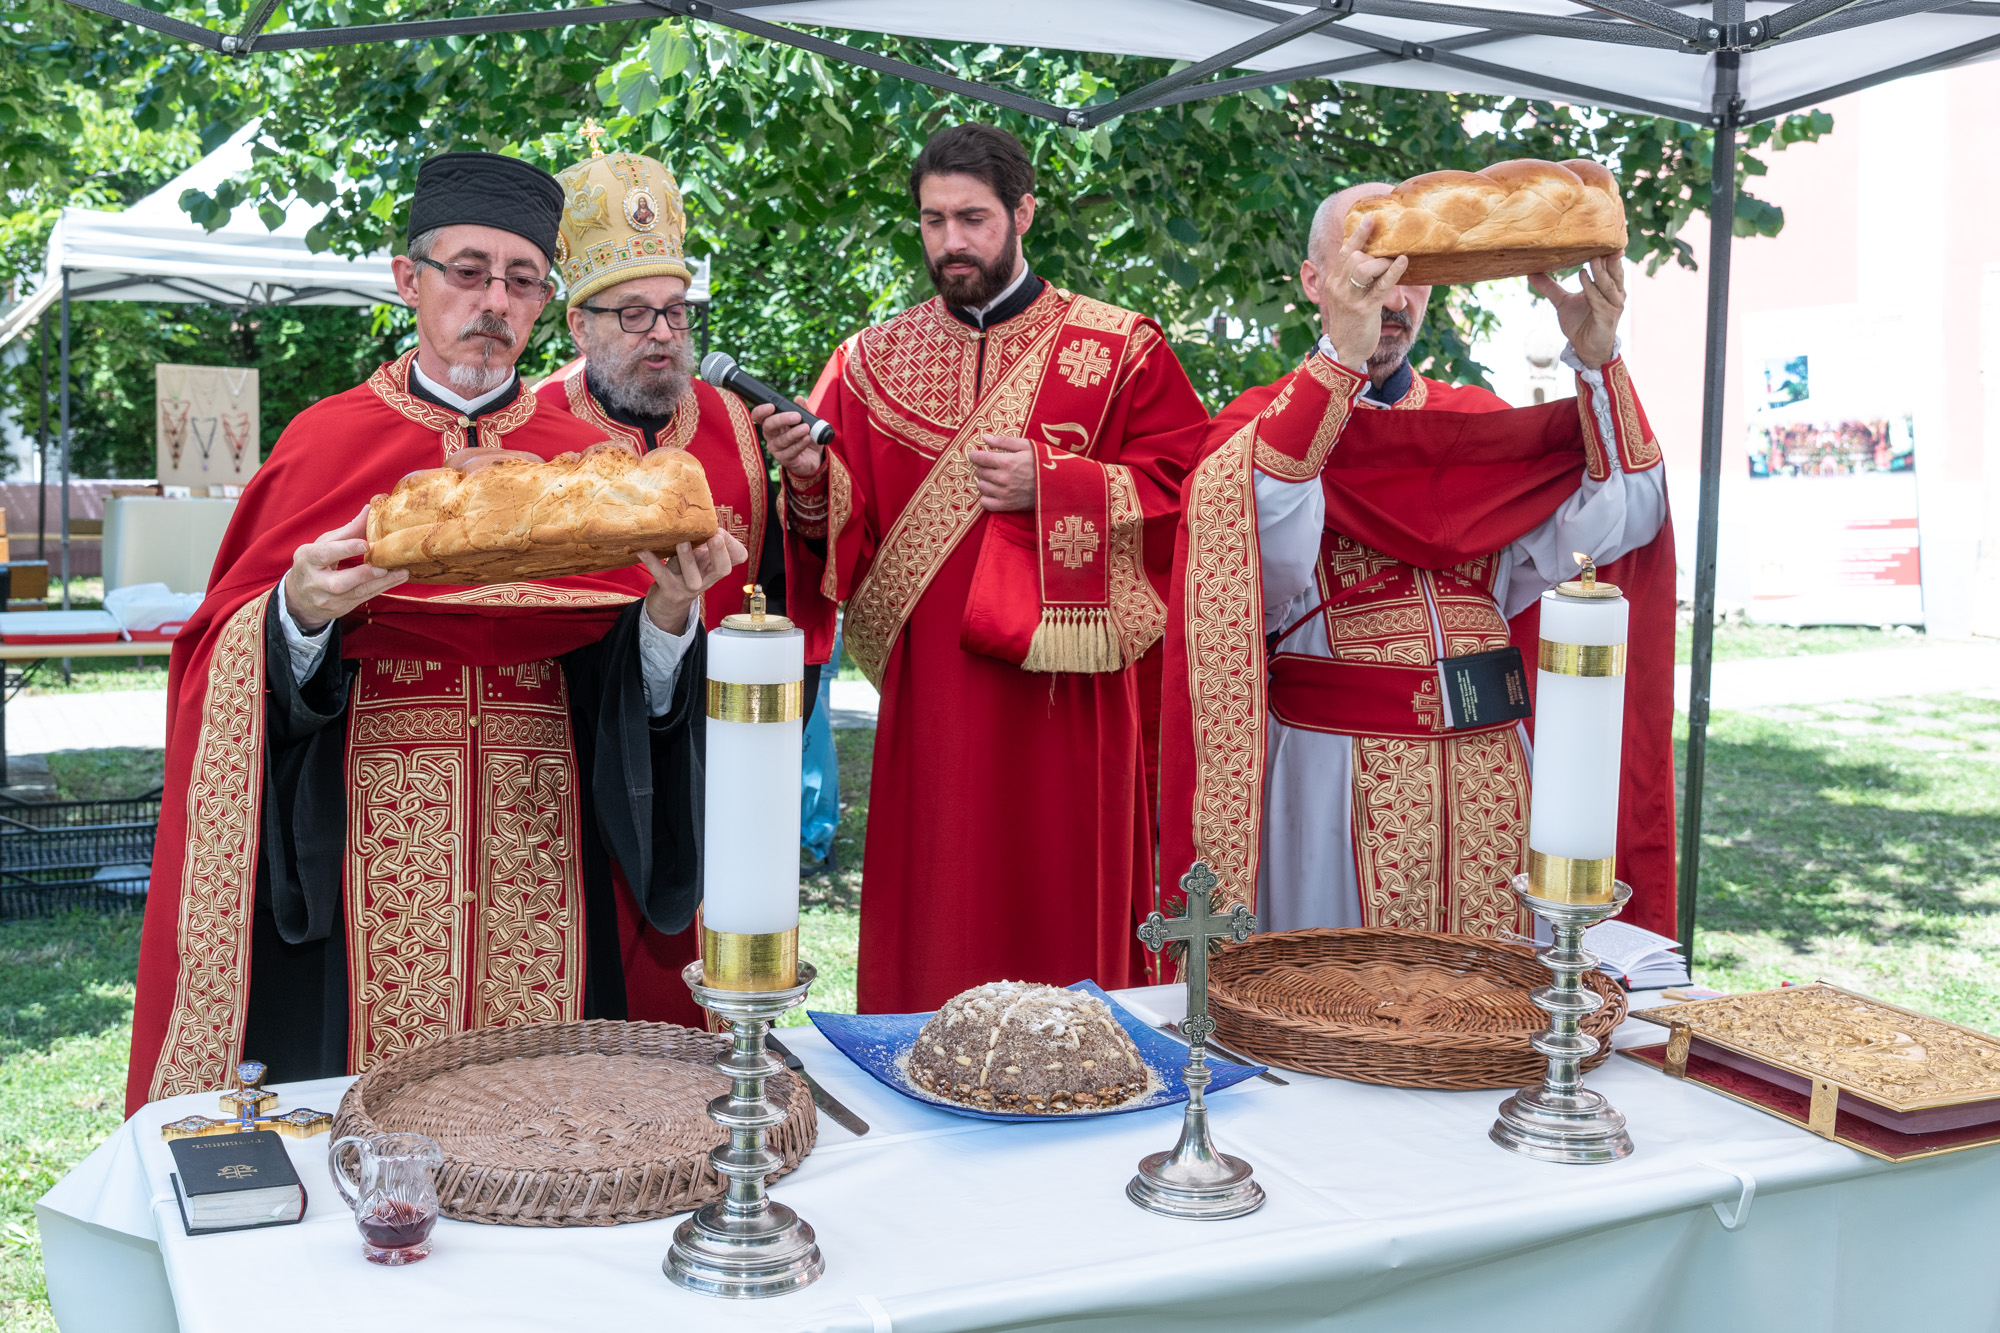 Szent Iván-napi búcsú és szerb nemzetiségi nap a Rác utcában